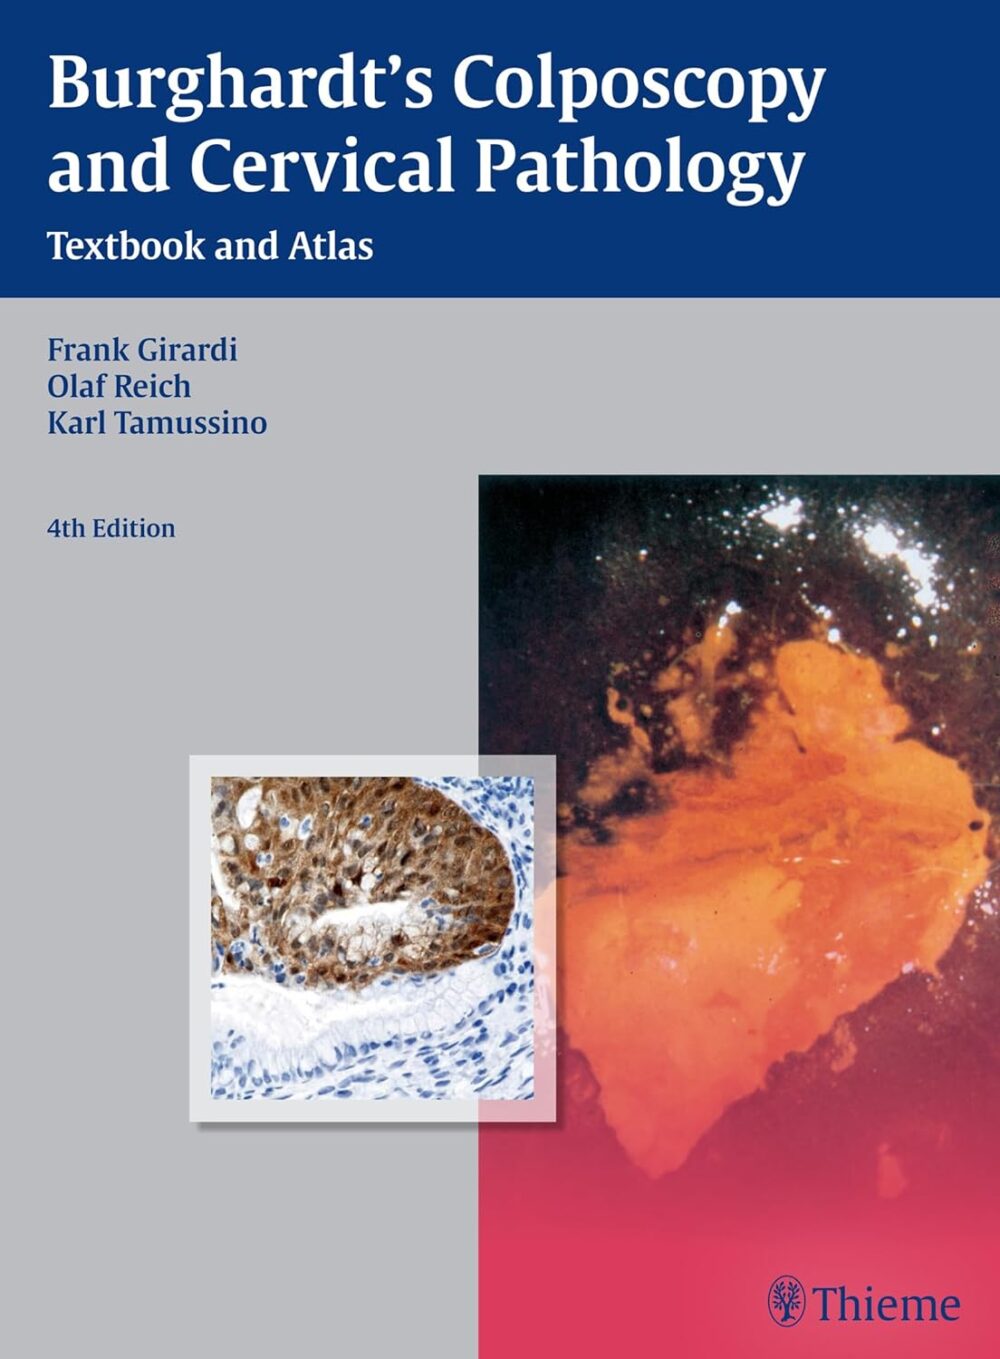 Burghardt's colposcopie en cervicale pathologie leerboek en atlas 4e editie